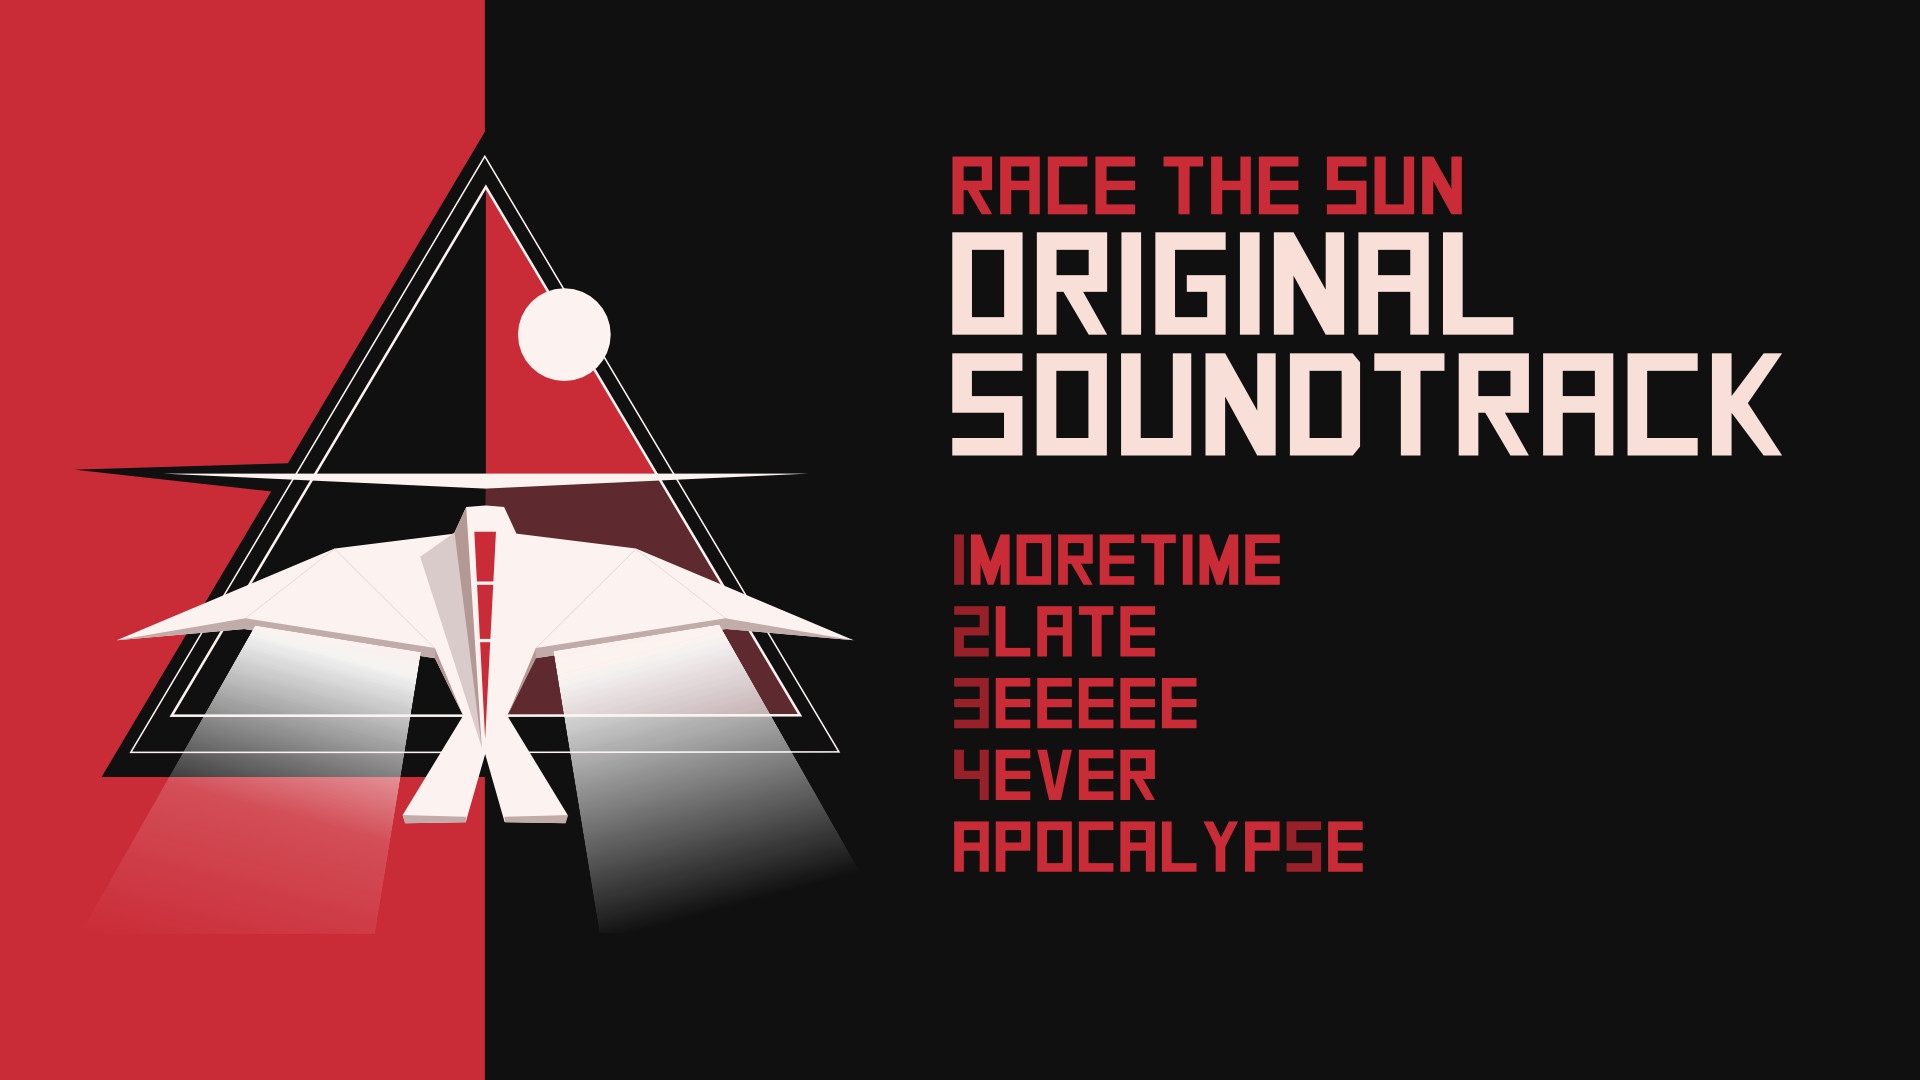 Race The Sun Original Soundtrack Featured Screenshot #1